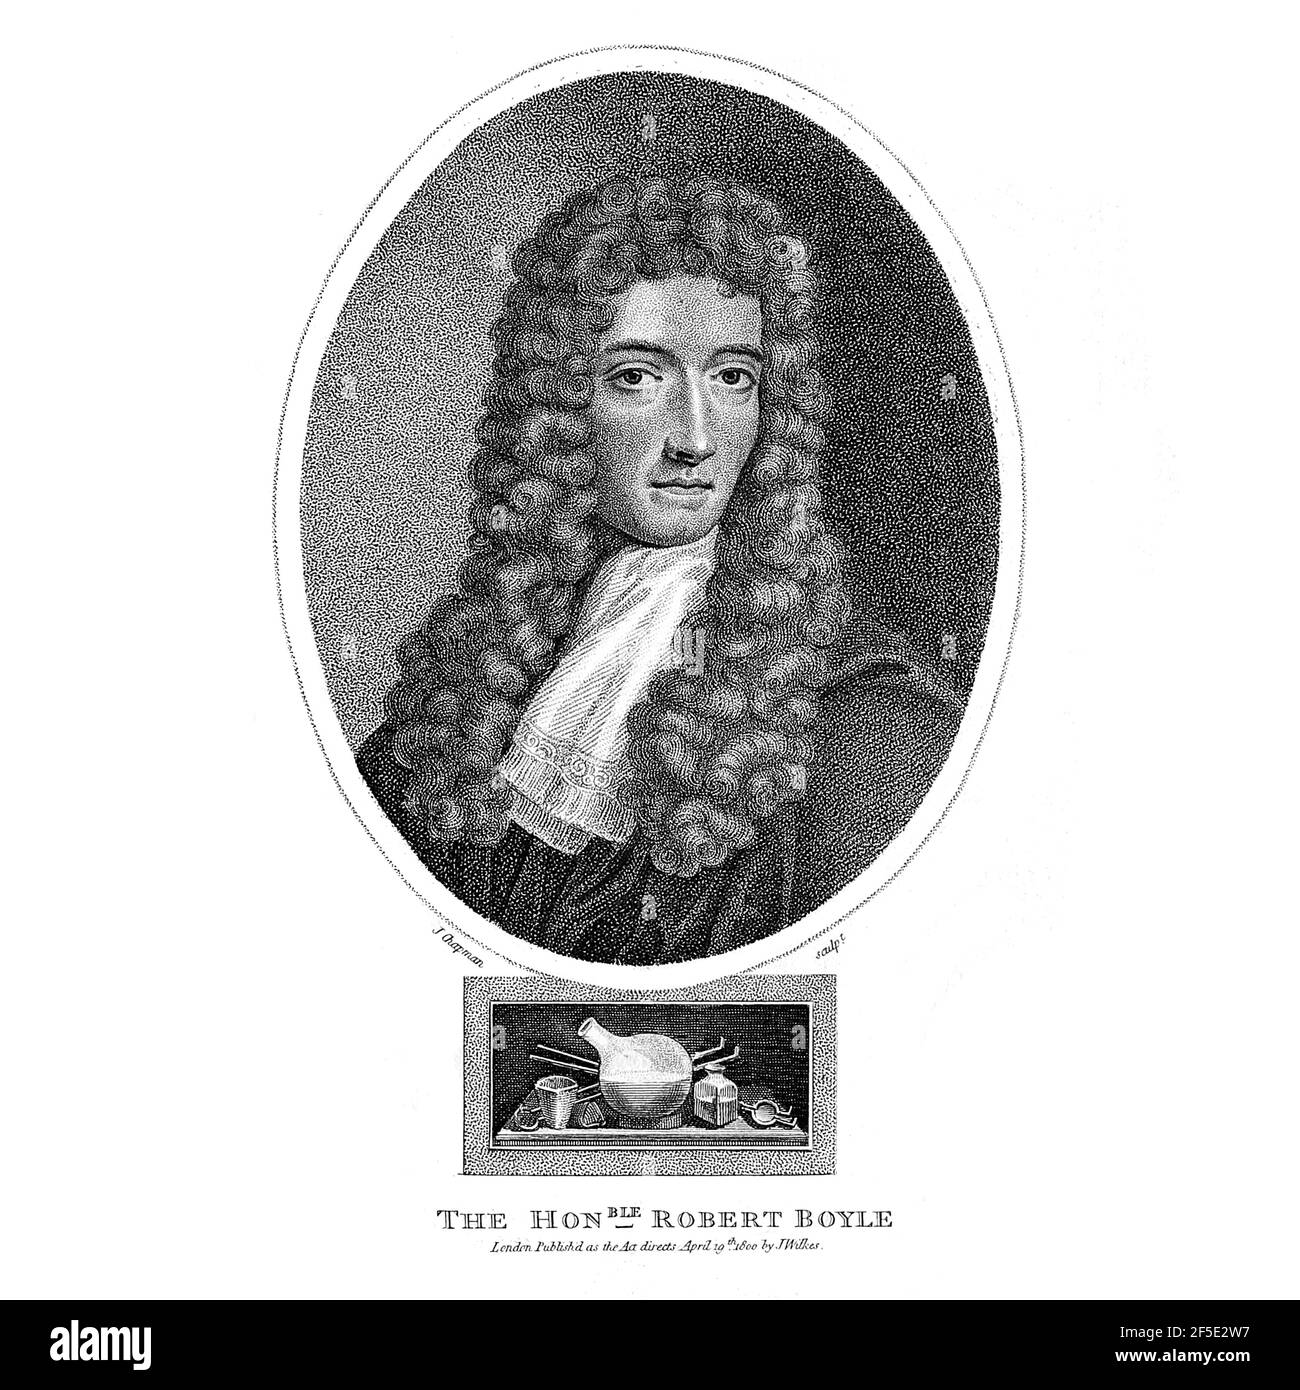 Robert Boyle FRS (25 gennaio 1627 – 31 dicembre 1691) è stato un . Boyle è oggi in gran parte considerato come il primo chimico moderno, e quindi uno dei fondatori della chimica moderna, e uno dei pionieri del metodo scientifico sperimentale moderno. È meglio conosciuto per la legge di Boyle, che descrive la relazione inversamente proporzionale tra la pressione assoluta e il volume di un gas, se la temperatura è mantenuta costante all'interno di un sistema chiuso. Tra le sue opere, lo scettico Chymist è visto come un libro chiave nel campo della chem Foto Stock